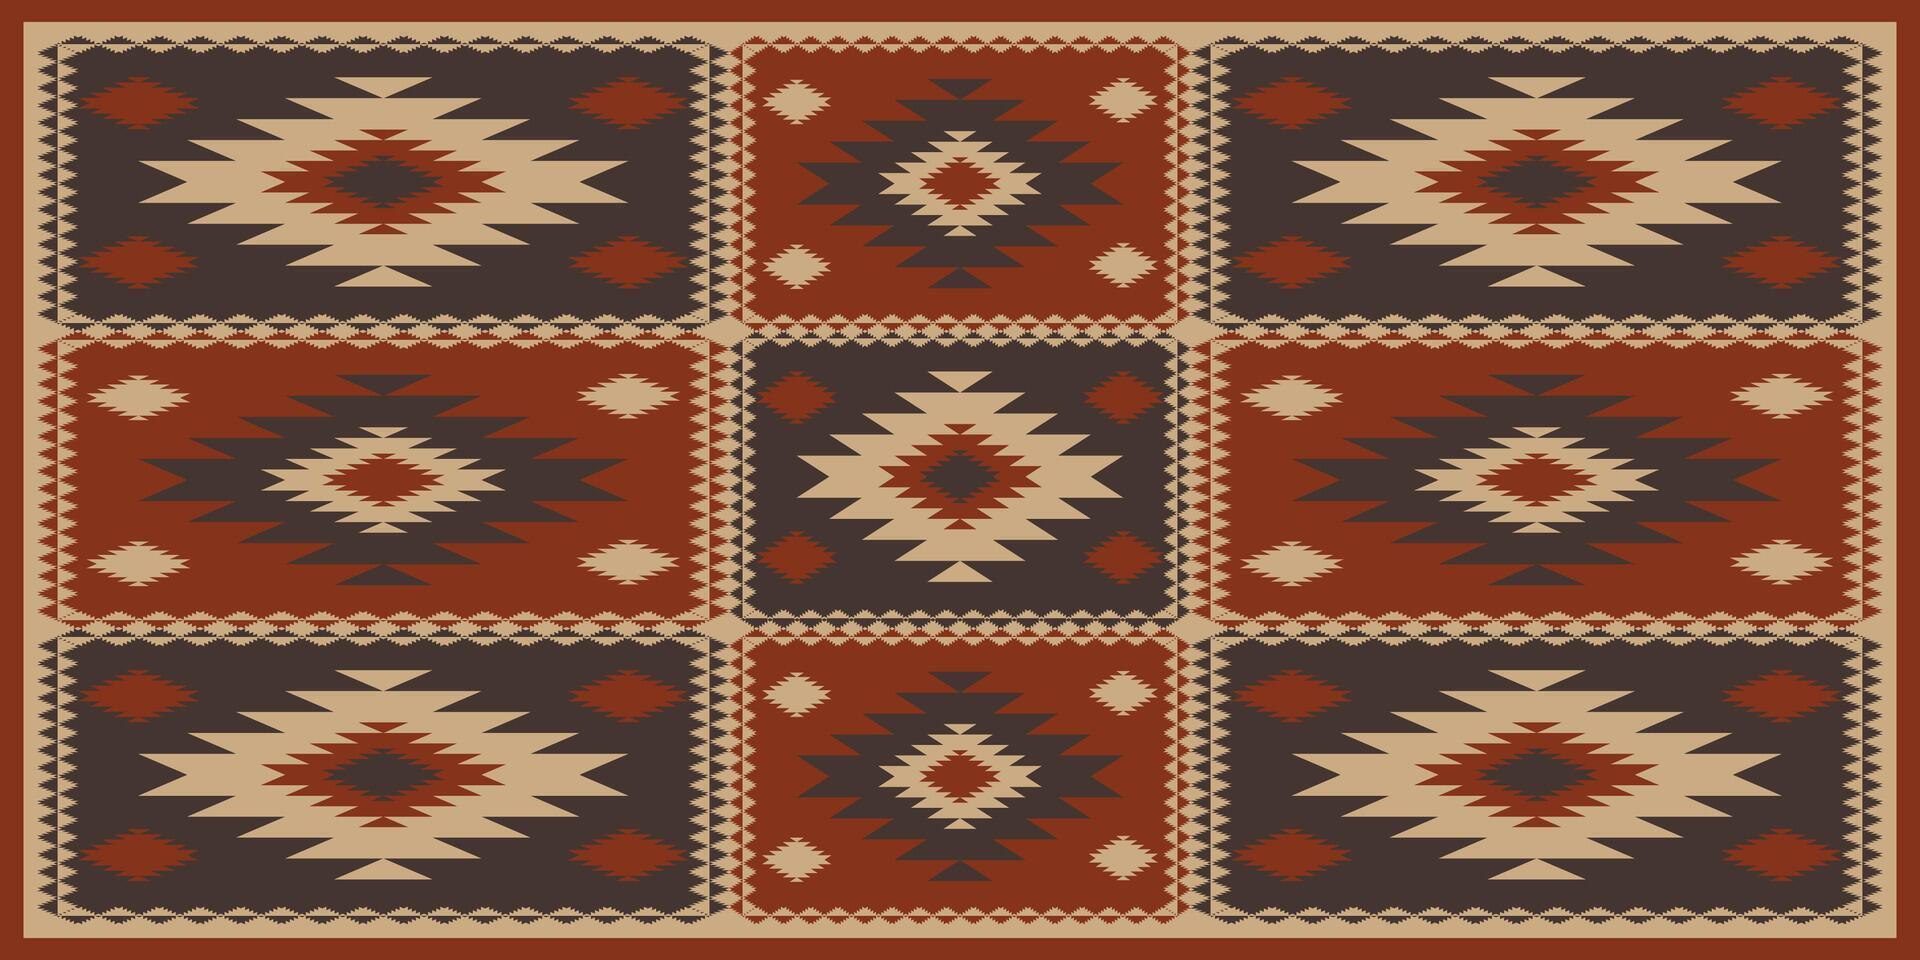 azteca Sur oeste labor de retazos modelo. del suroeste navajo geométrico labor de retazos modelo rústico bohemio estilo. étnico geométrico modelo utilizar para alfombra, Manteles, colcha, almohadón, tapicería, etc. vector